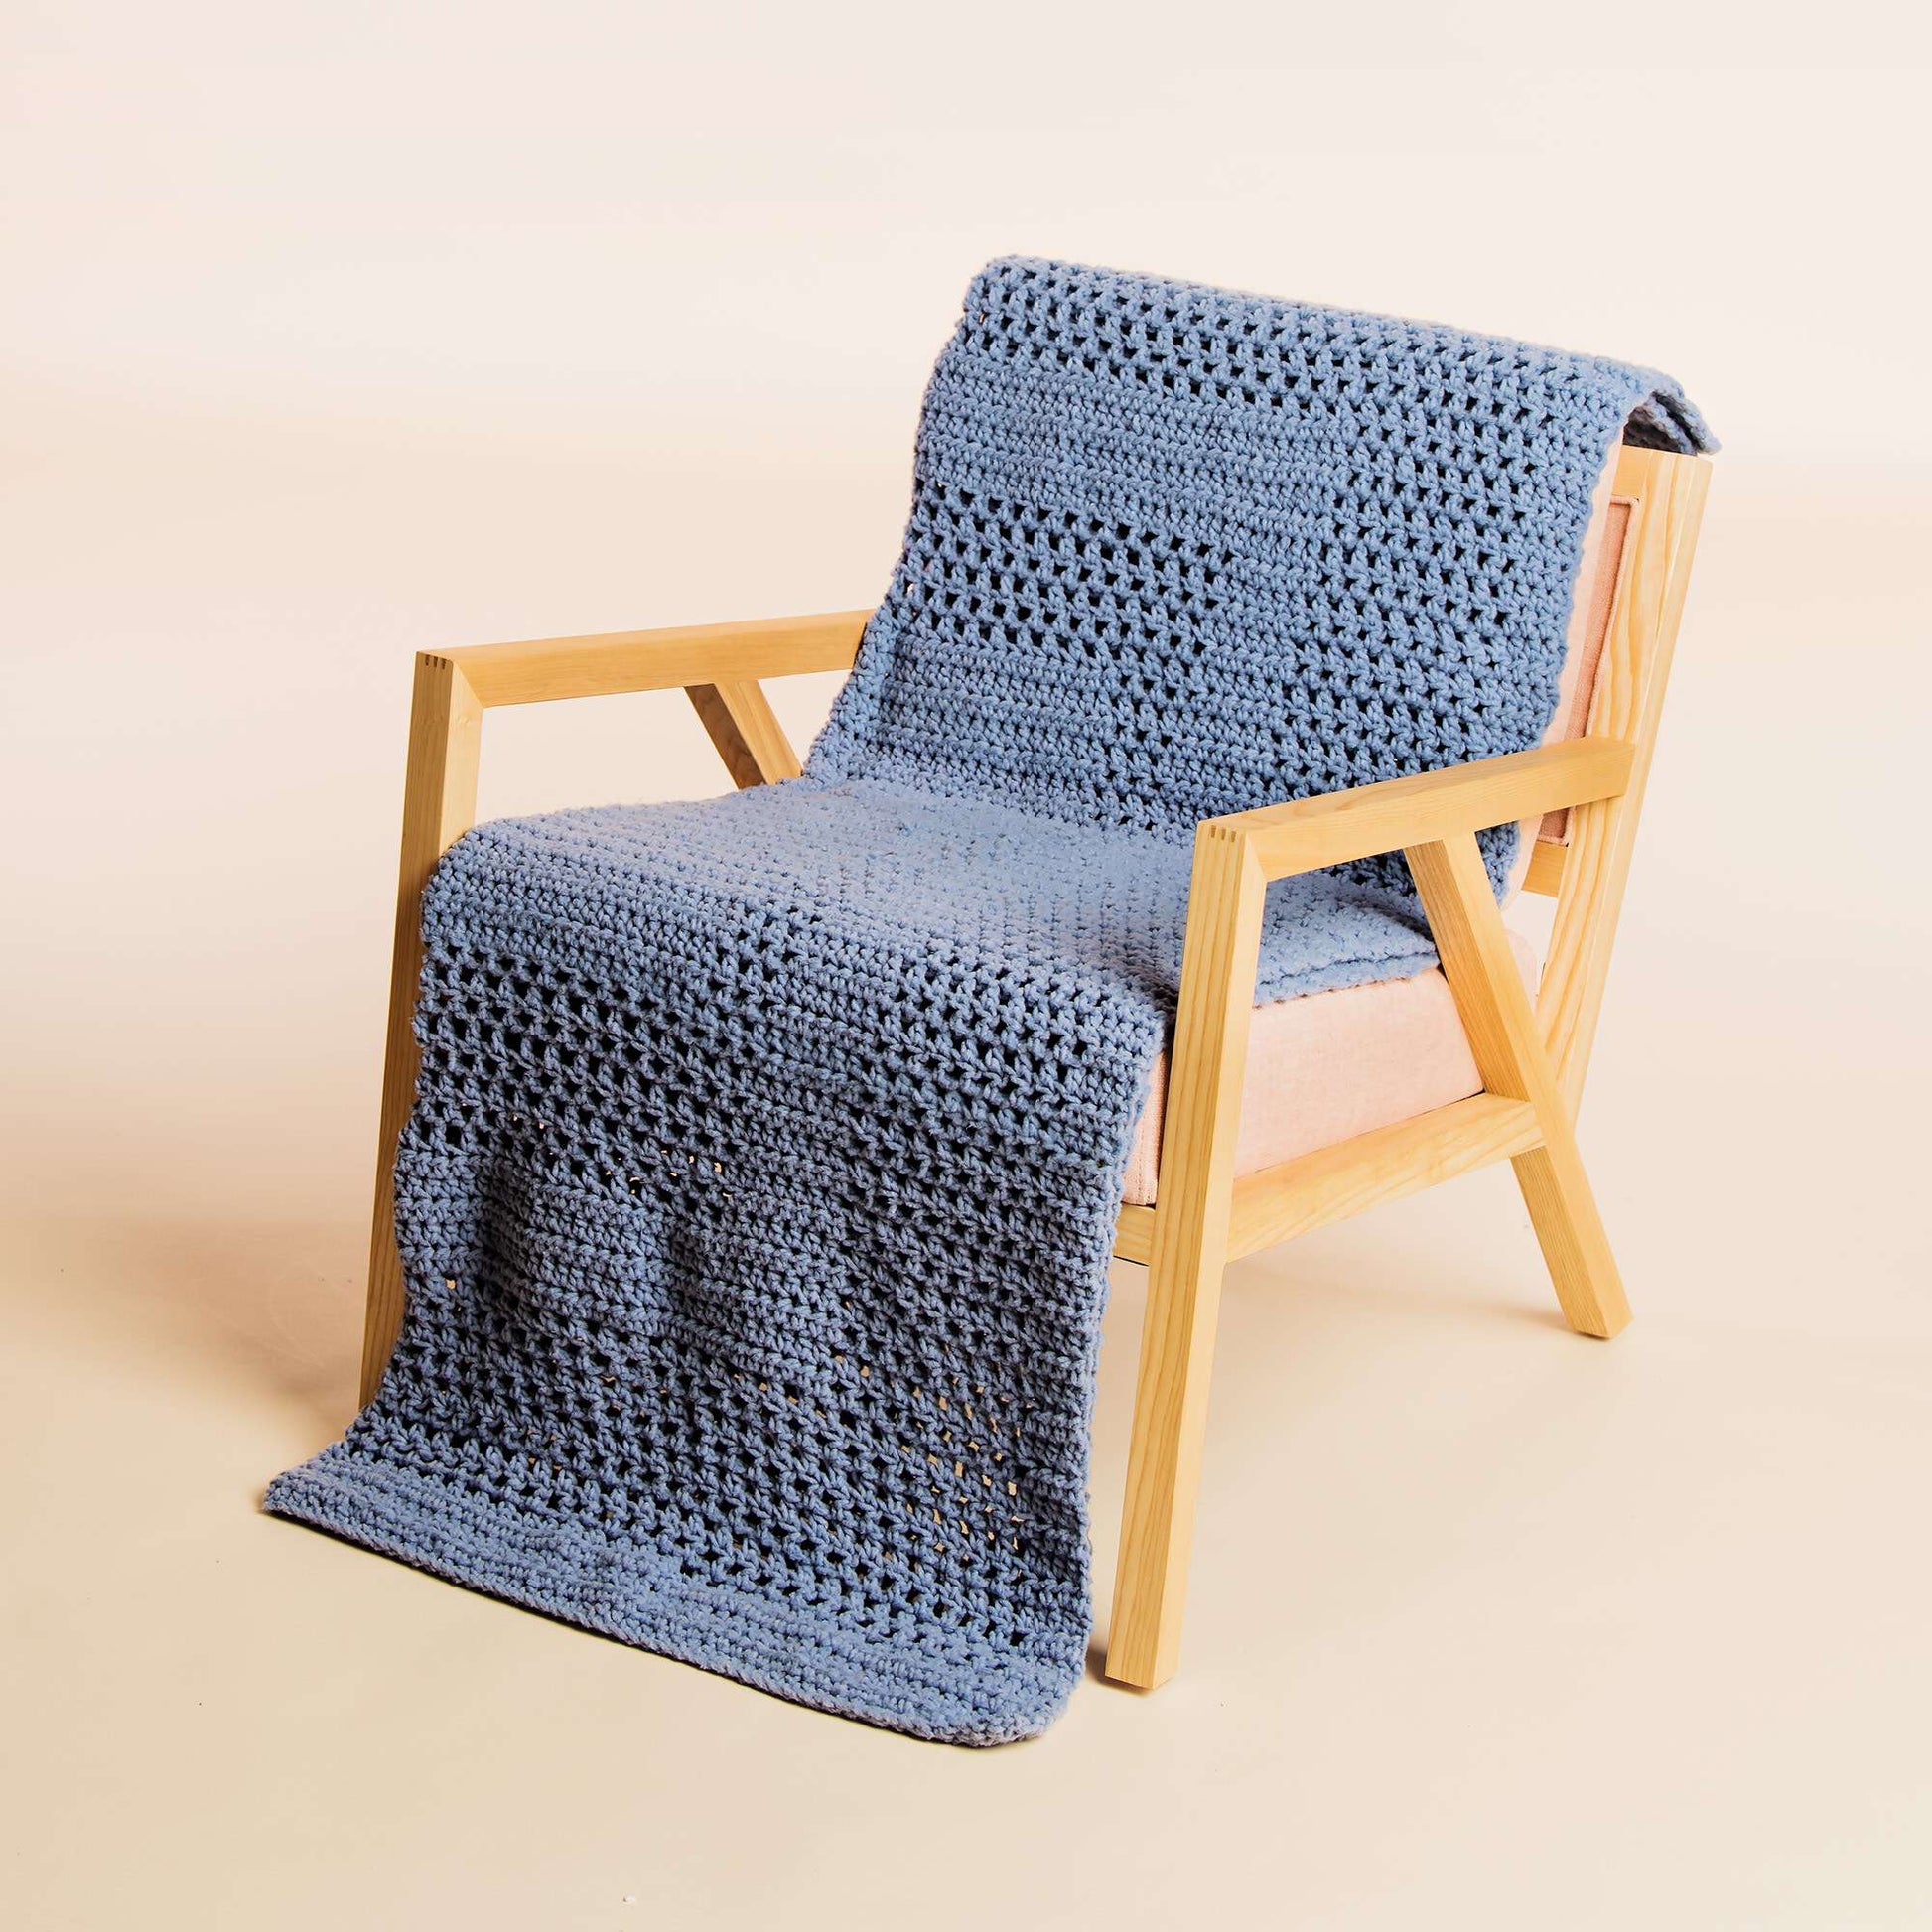 Bernat Simple Framed Blanket Crochet Kit